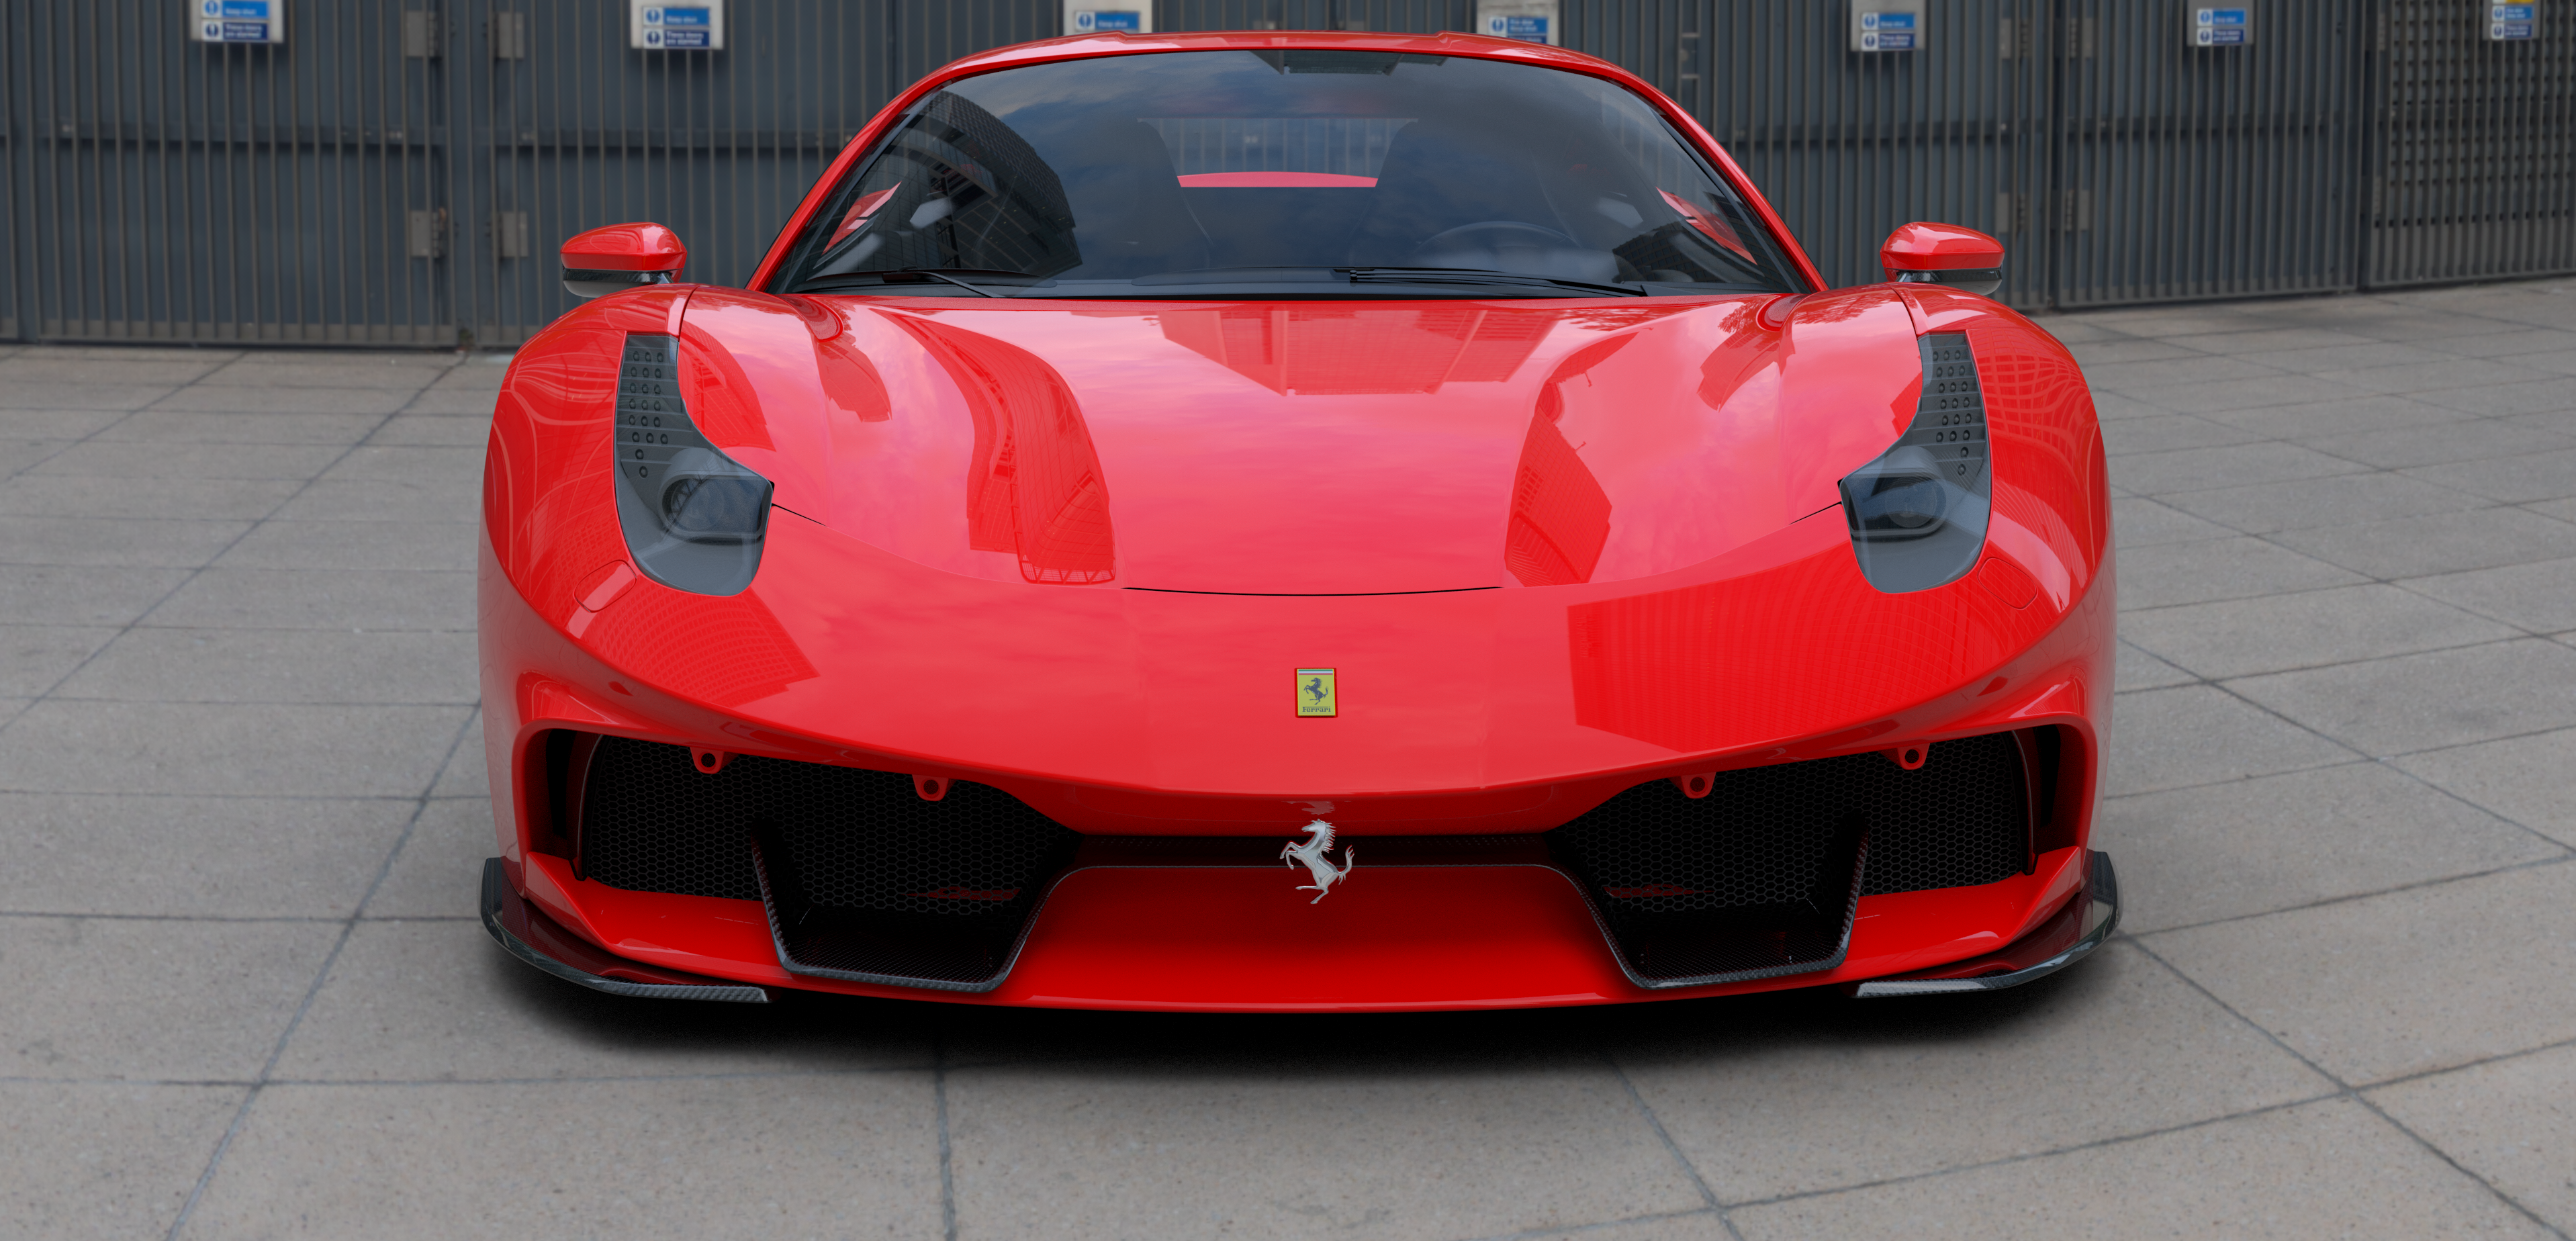 Check price and buy Duke Dynamics Body kit set for Ferrari 458
